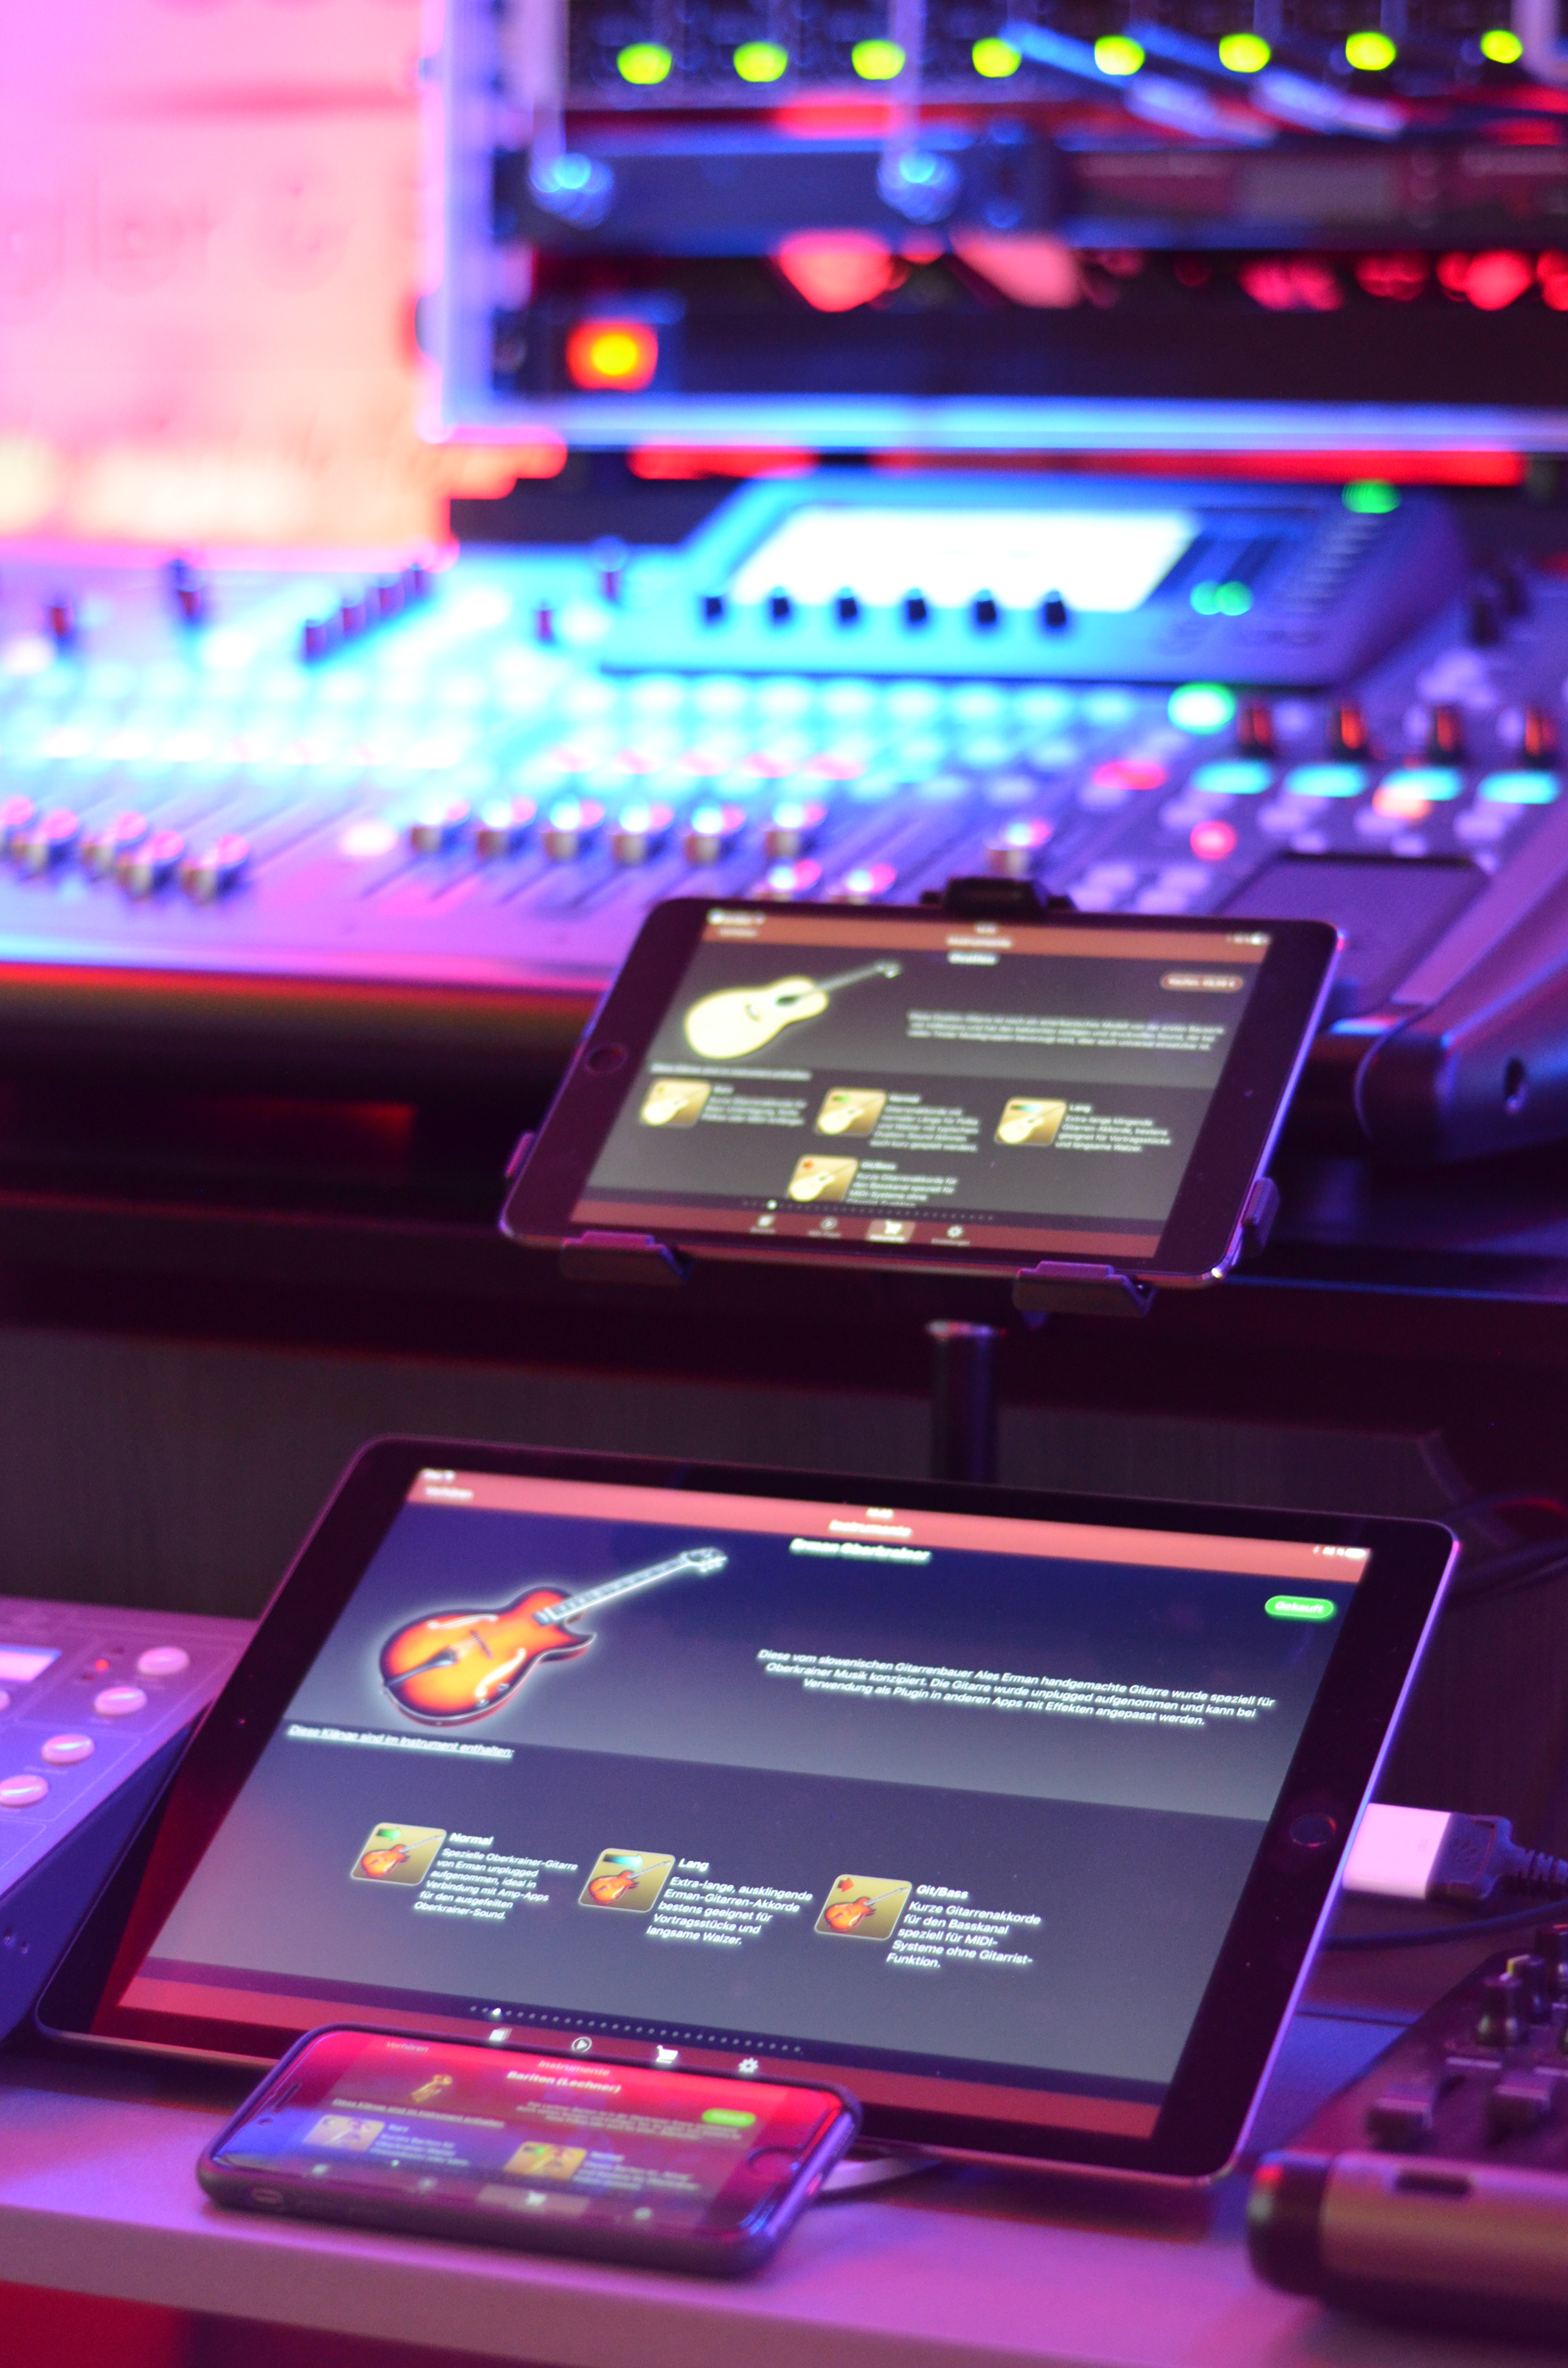 Stiegler & Friends Musikschule verwendet die Turbosounds-App im Musikunterricht